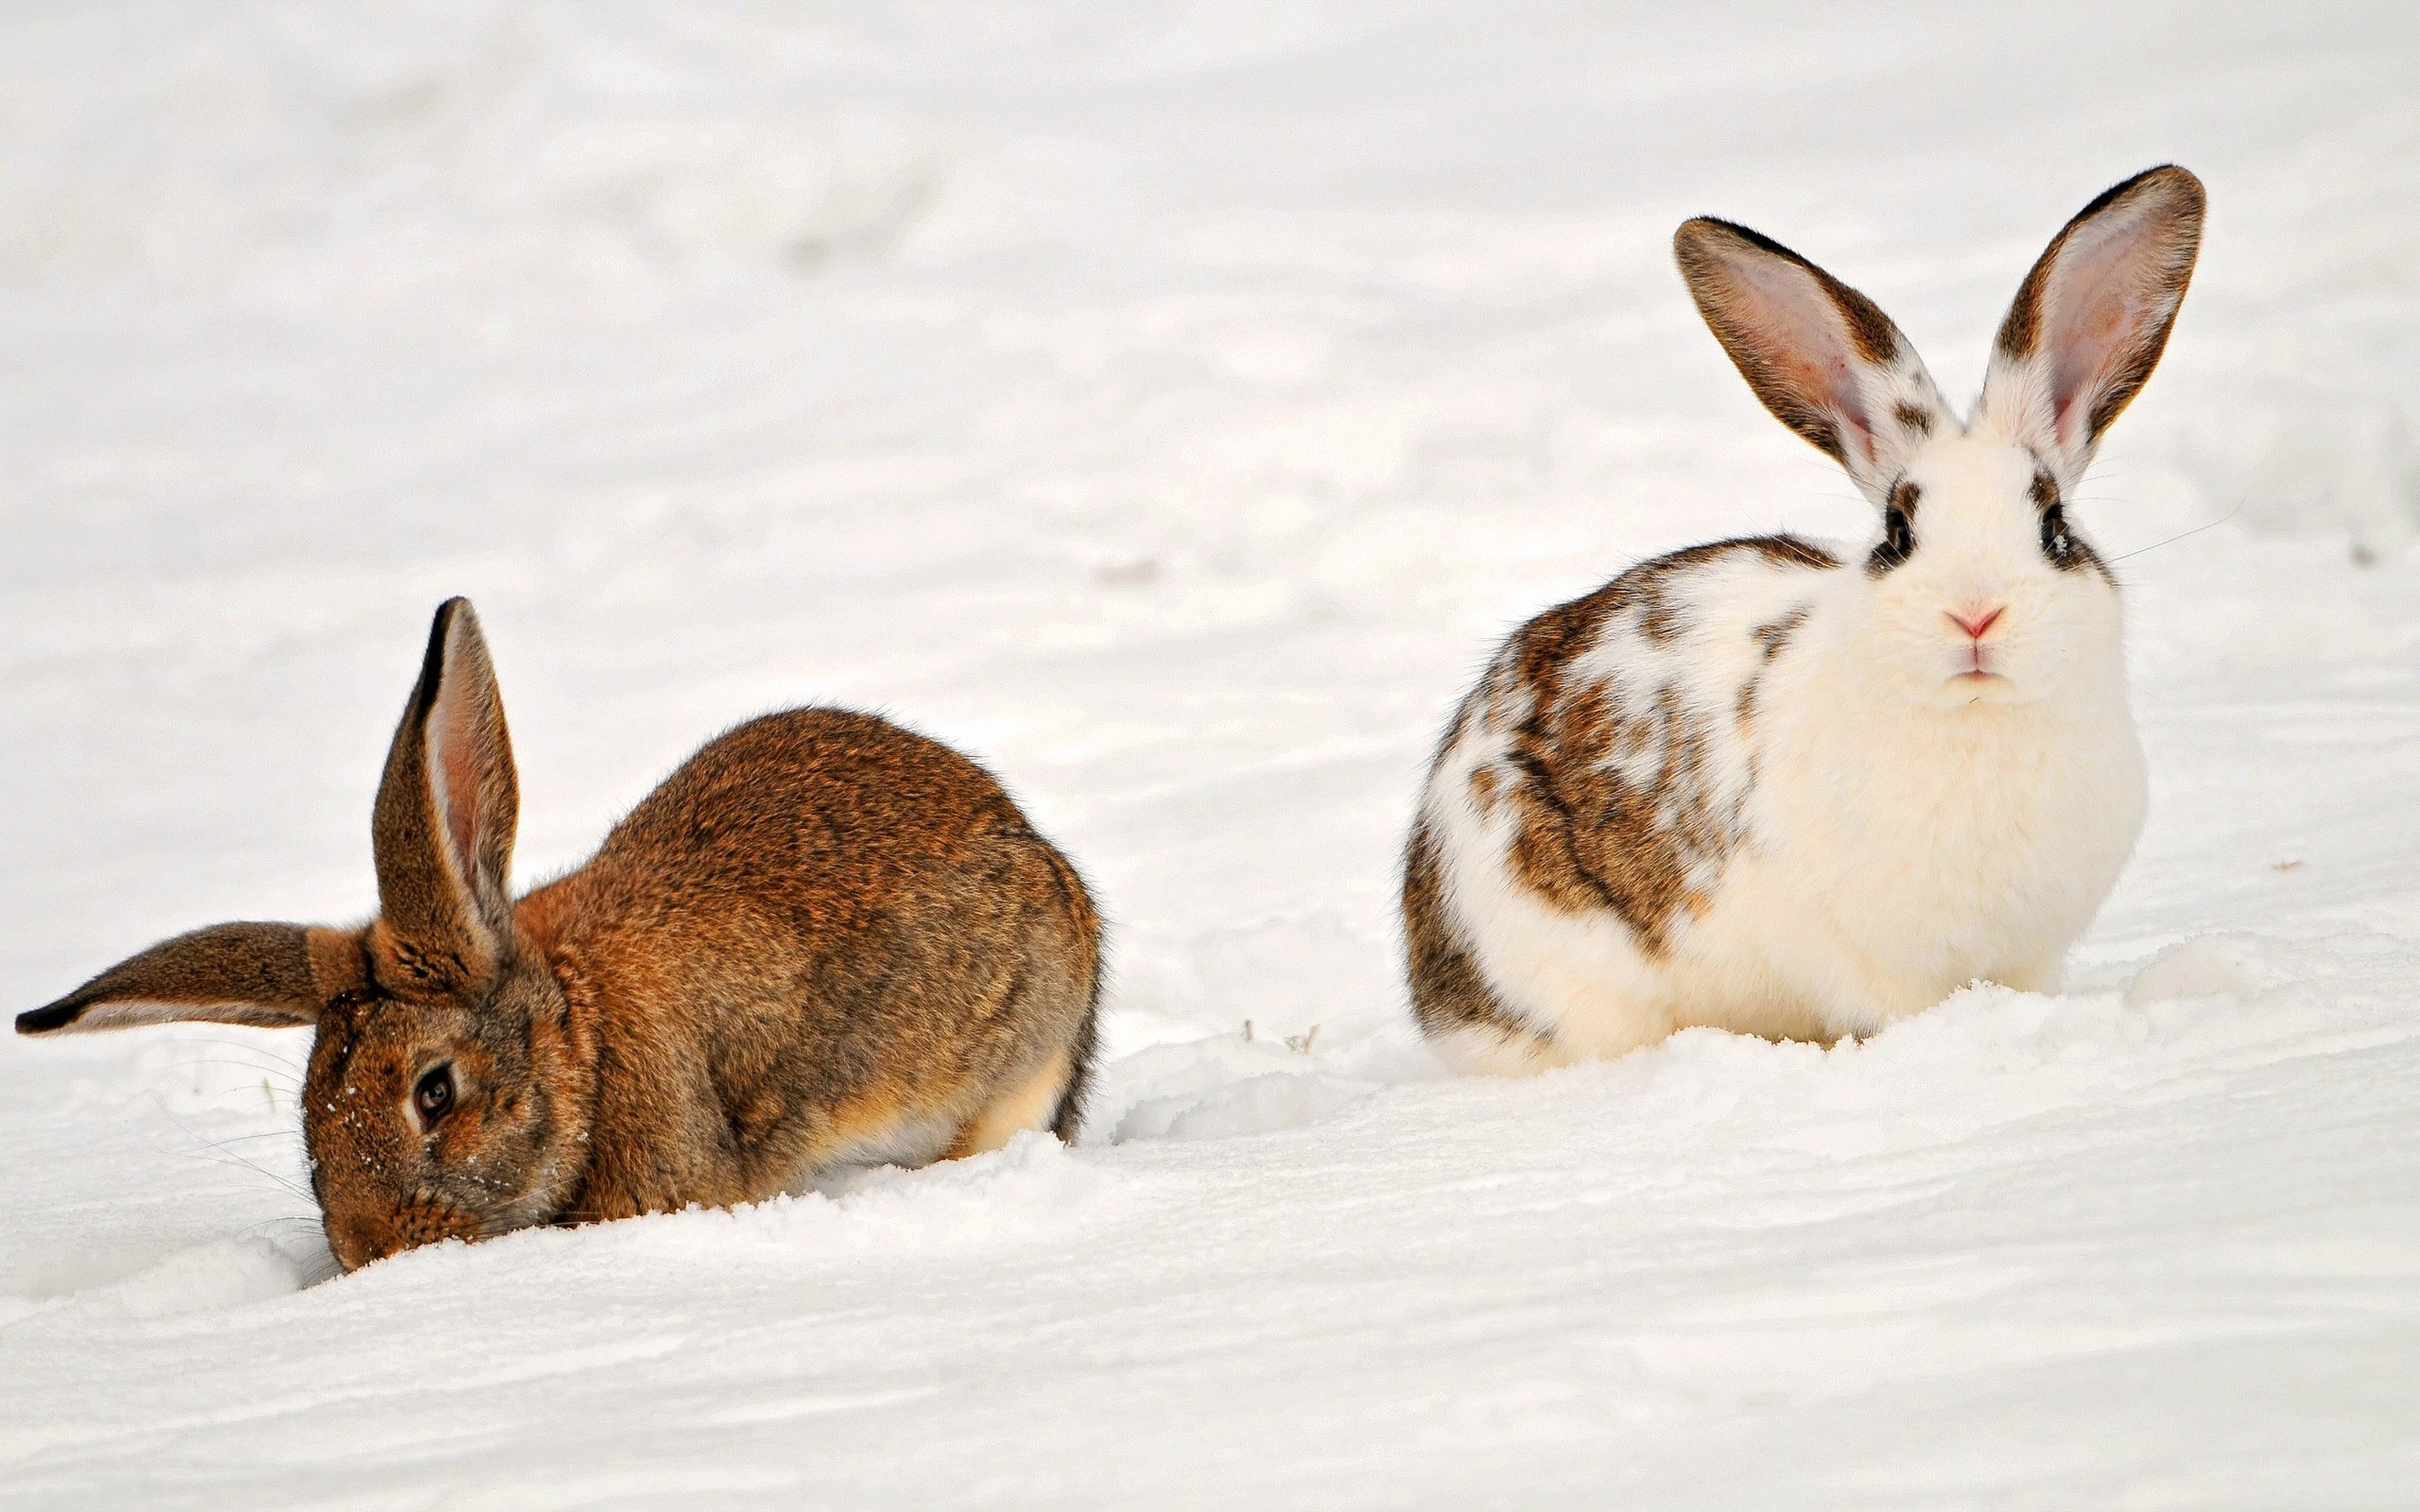 кролики на снегу, милые домашние животные, Rabbits in the snow, cute pets